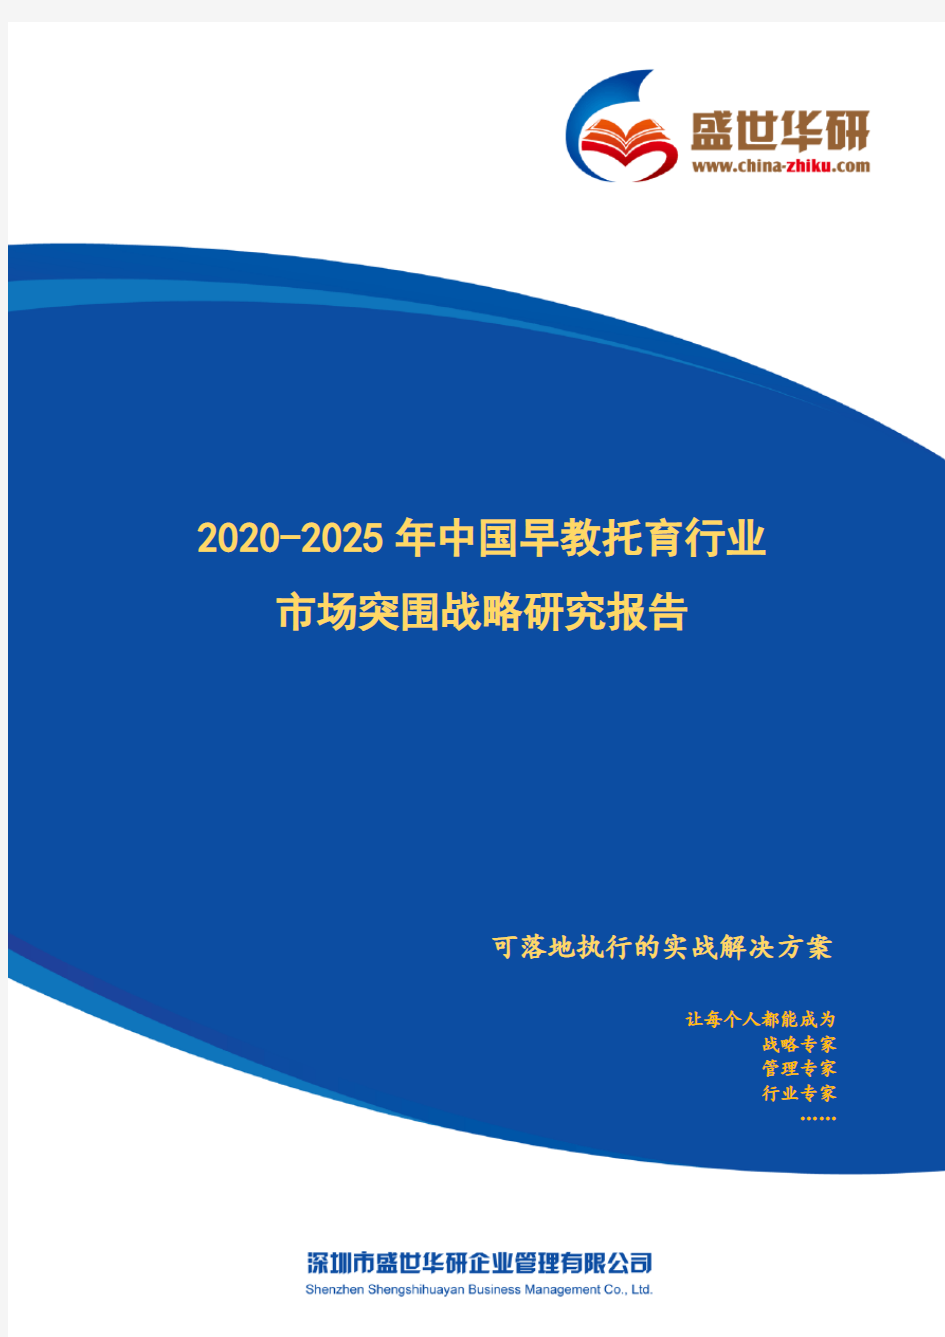 【完整版】2020-2025年中国早教托育行业市场突围策略研究报告